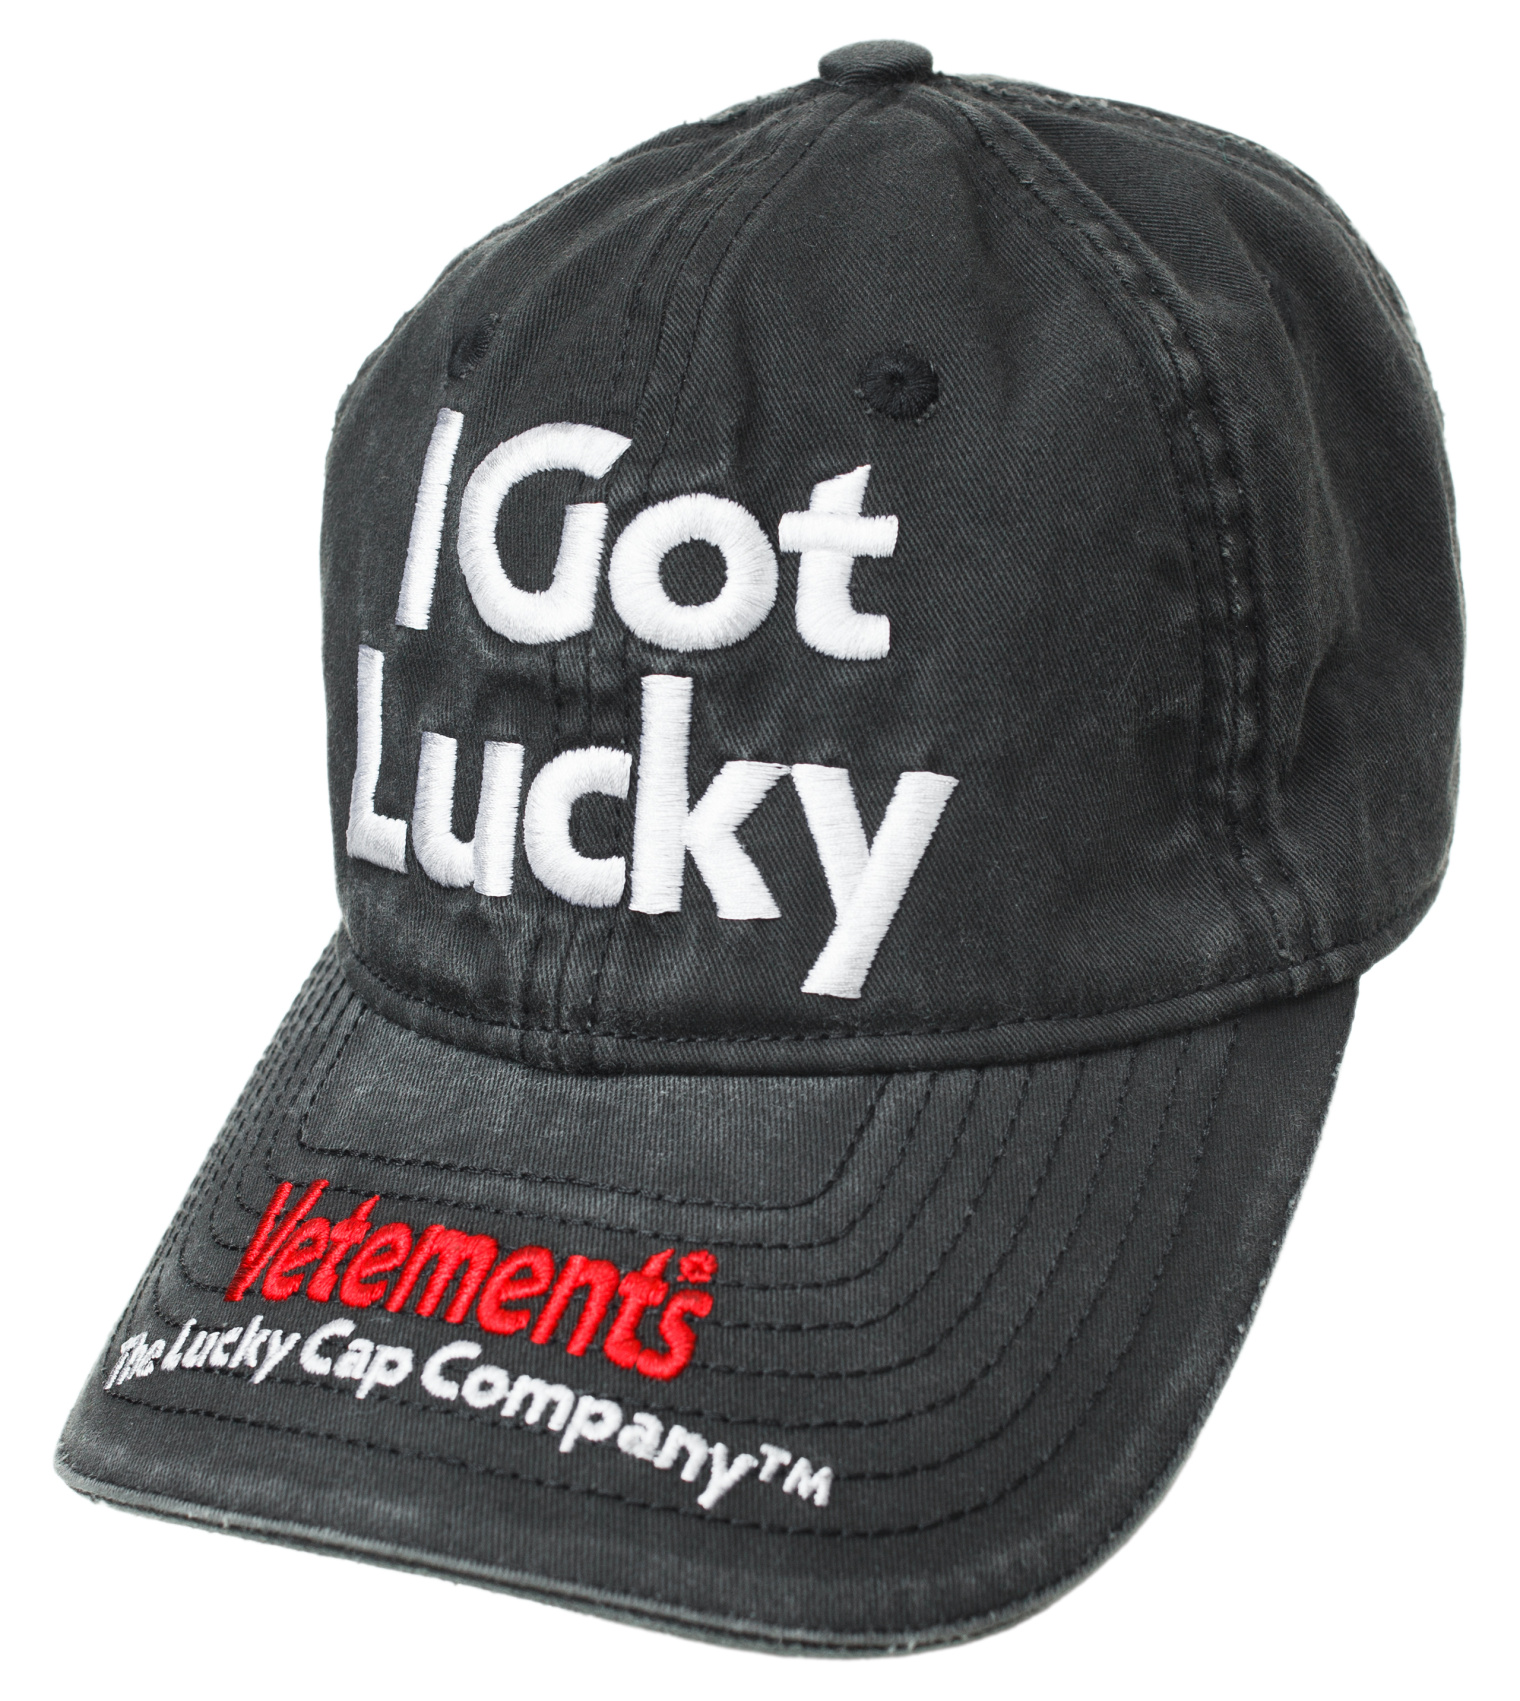 Buy VETEMENTS men grey got lucky embroidered cap for $660 online